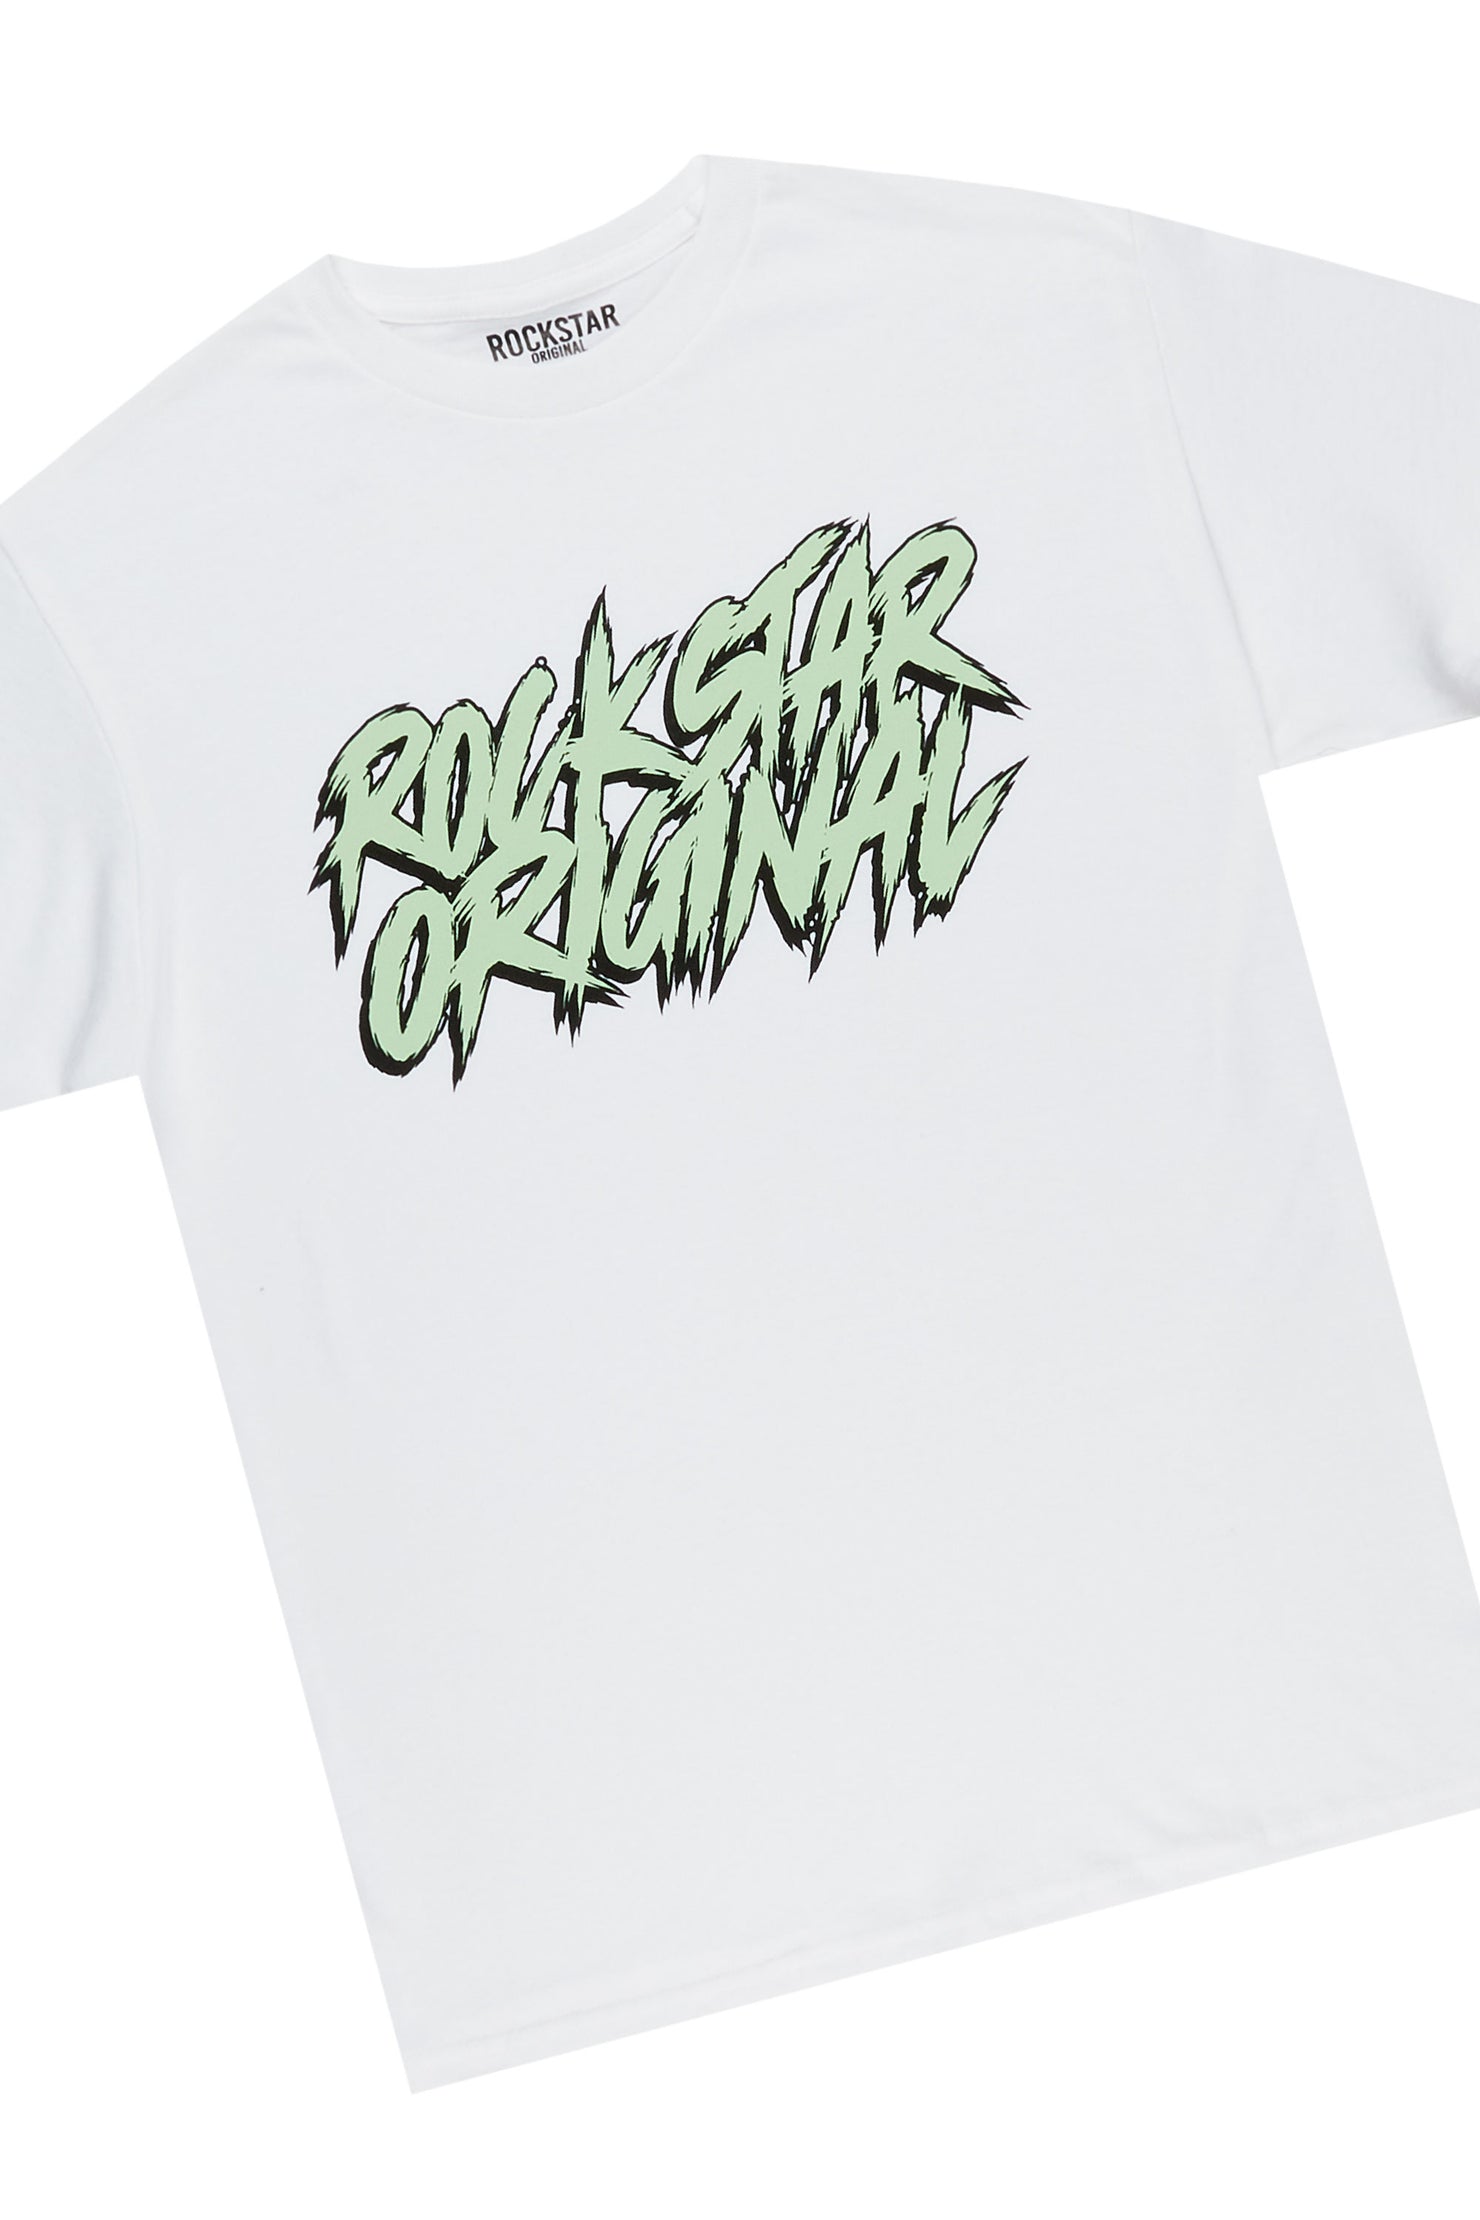 Zustrand White/Green T-Shirt Short Set